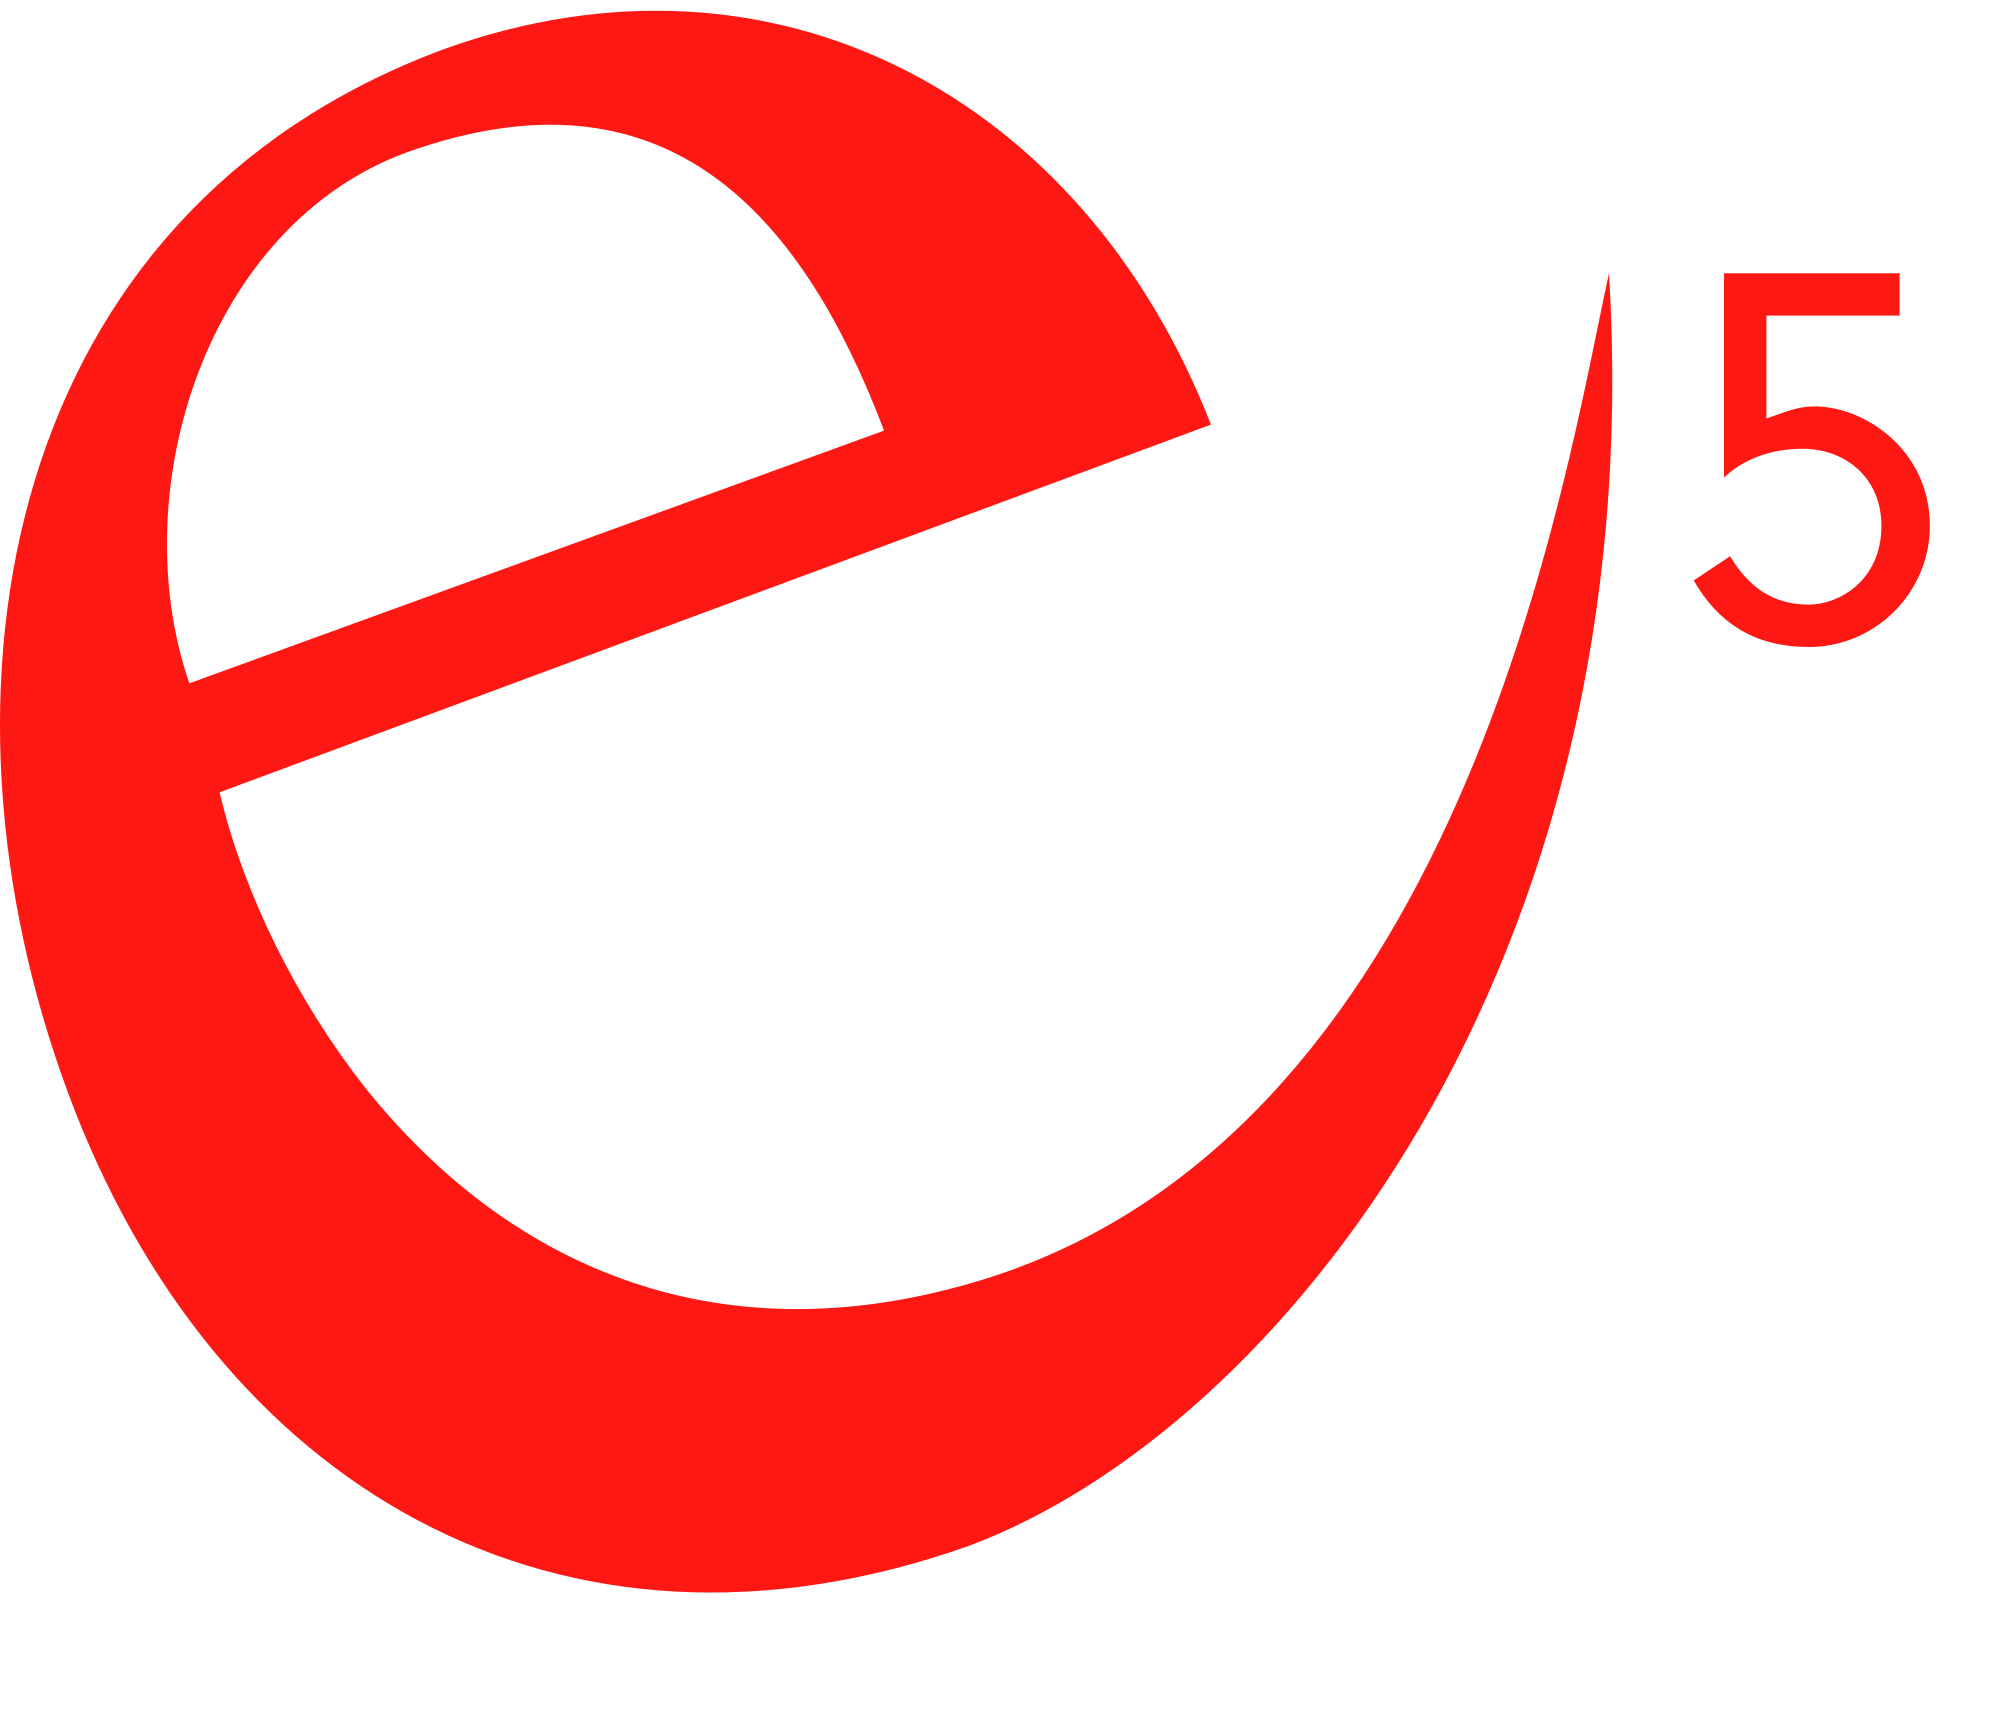 e5 - Programm